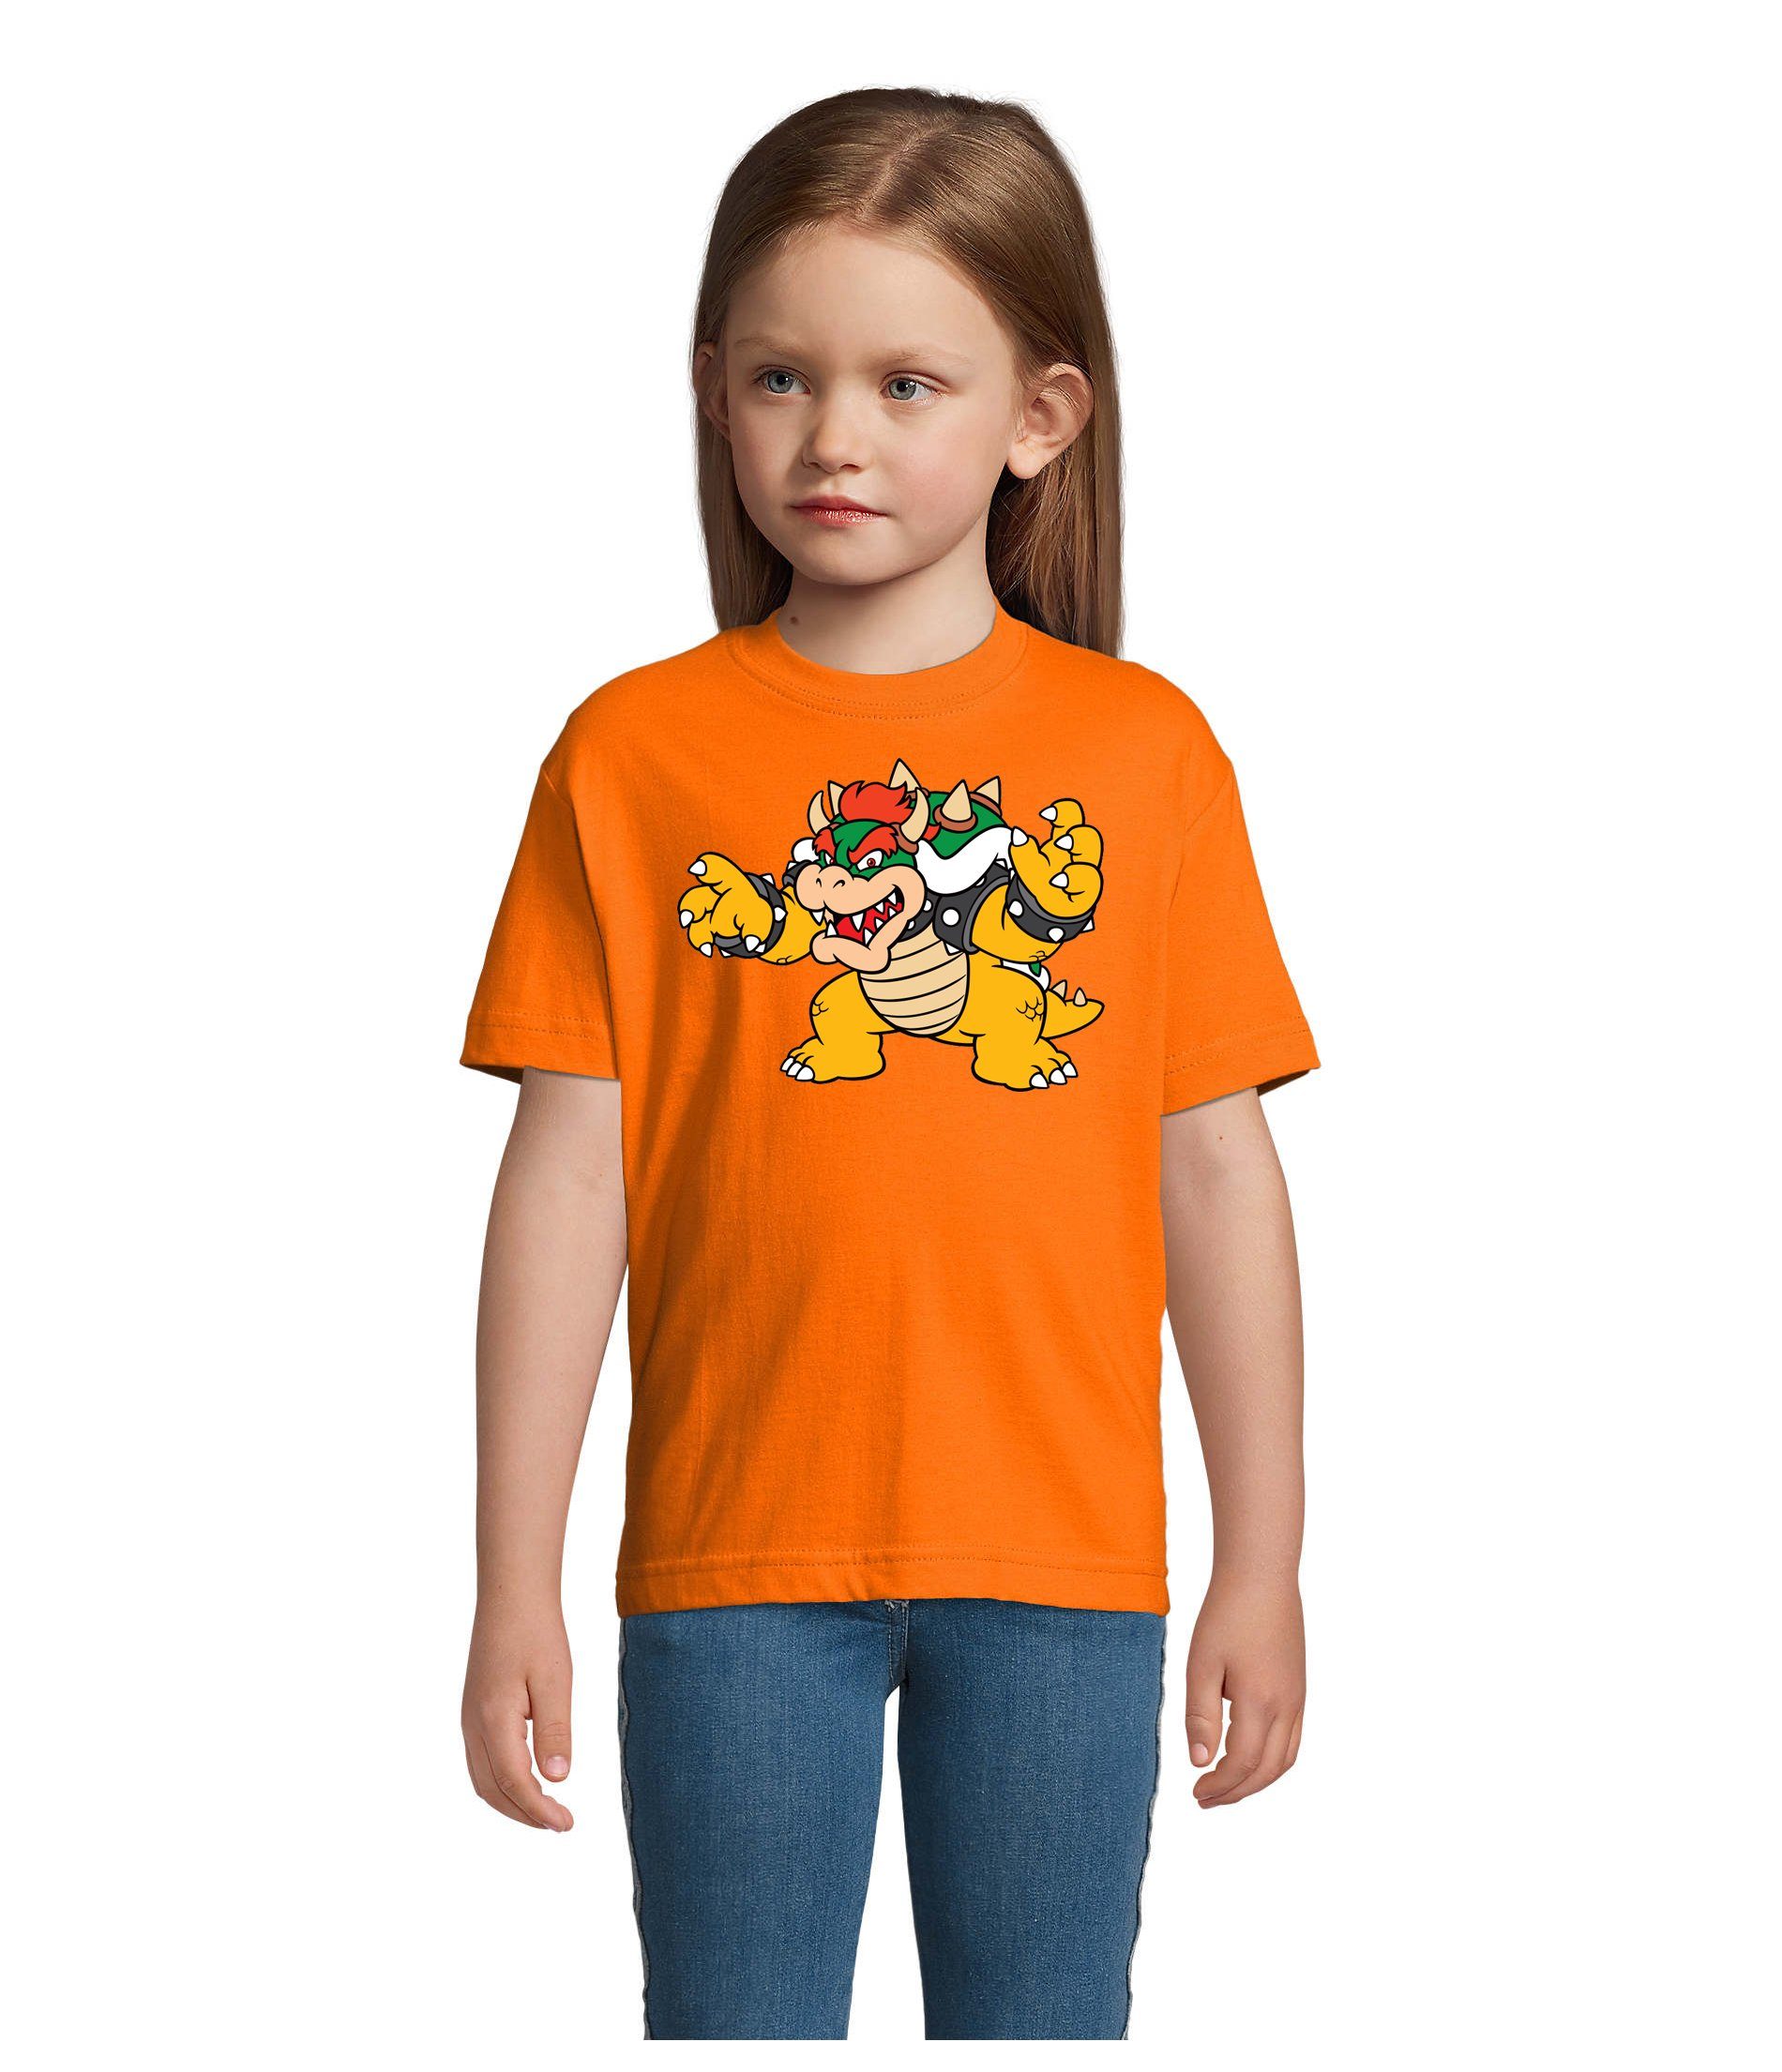 Yoshi Game Bowser Nintendo Luigi Mario Gamer & T-Shirt Orange Blondie Konsole Kinder Brownie